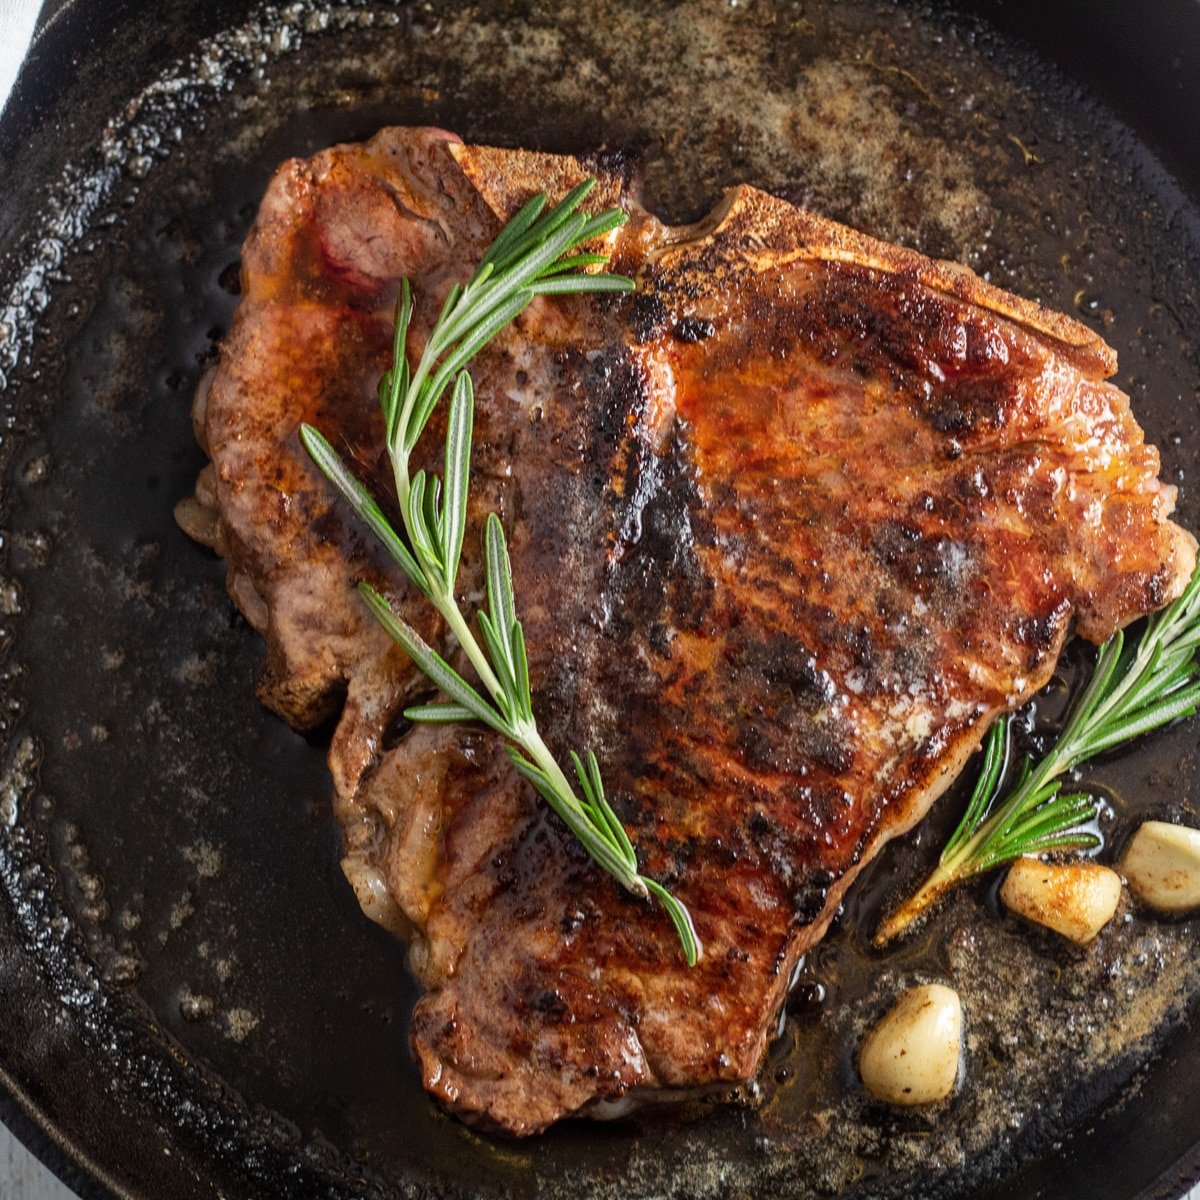 Pan aangebraden t-bone steak in pan met knoflook en rozemarijn.